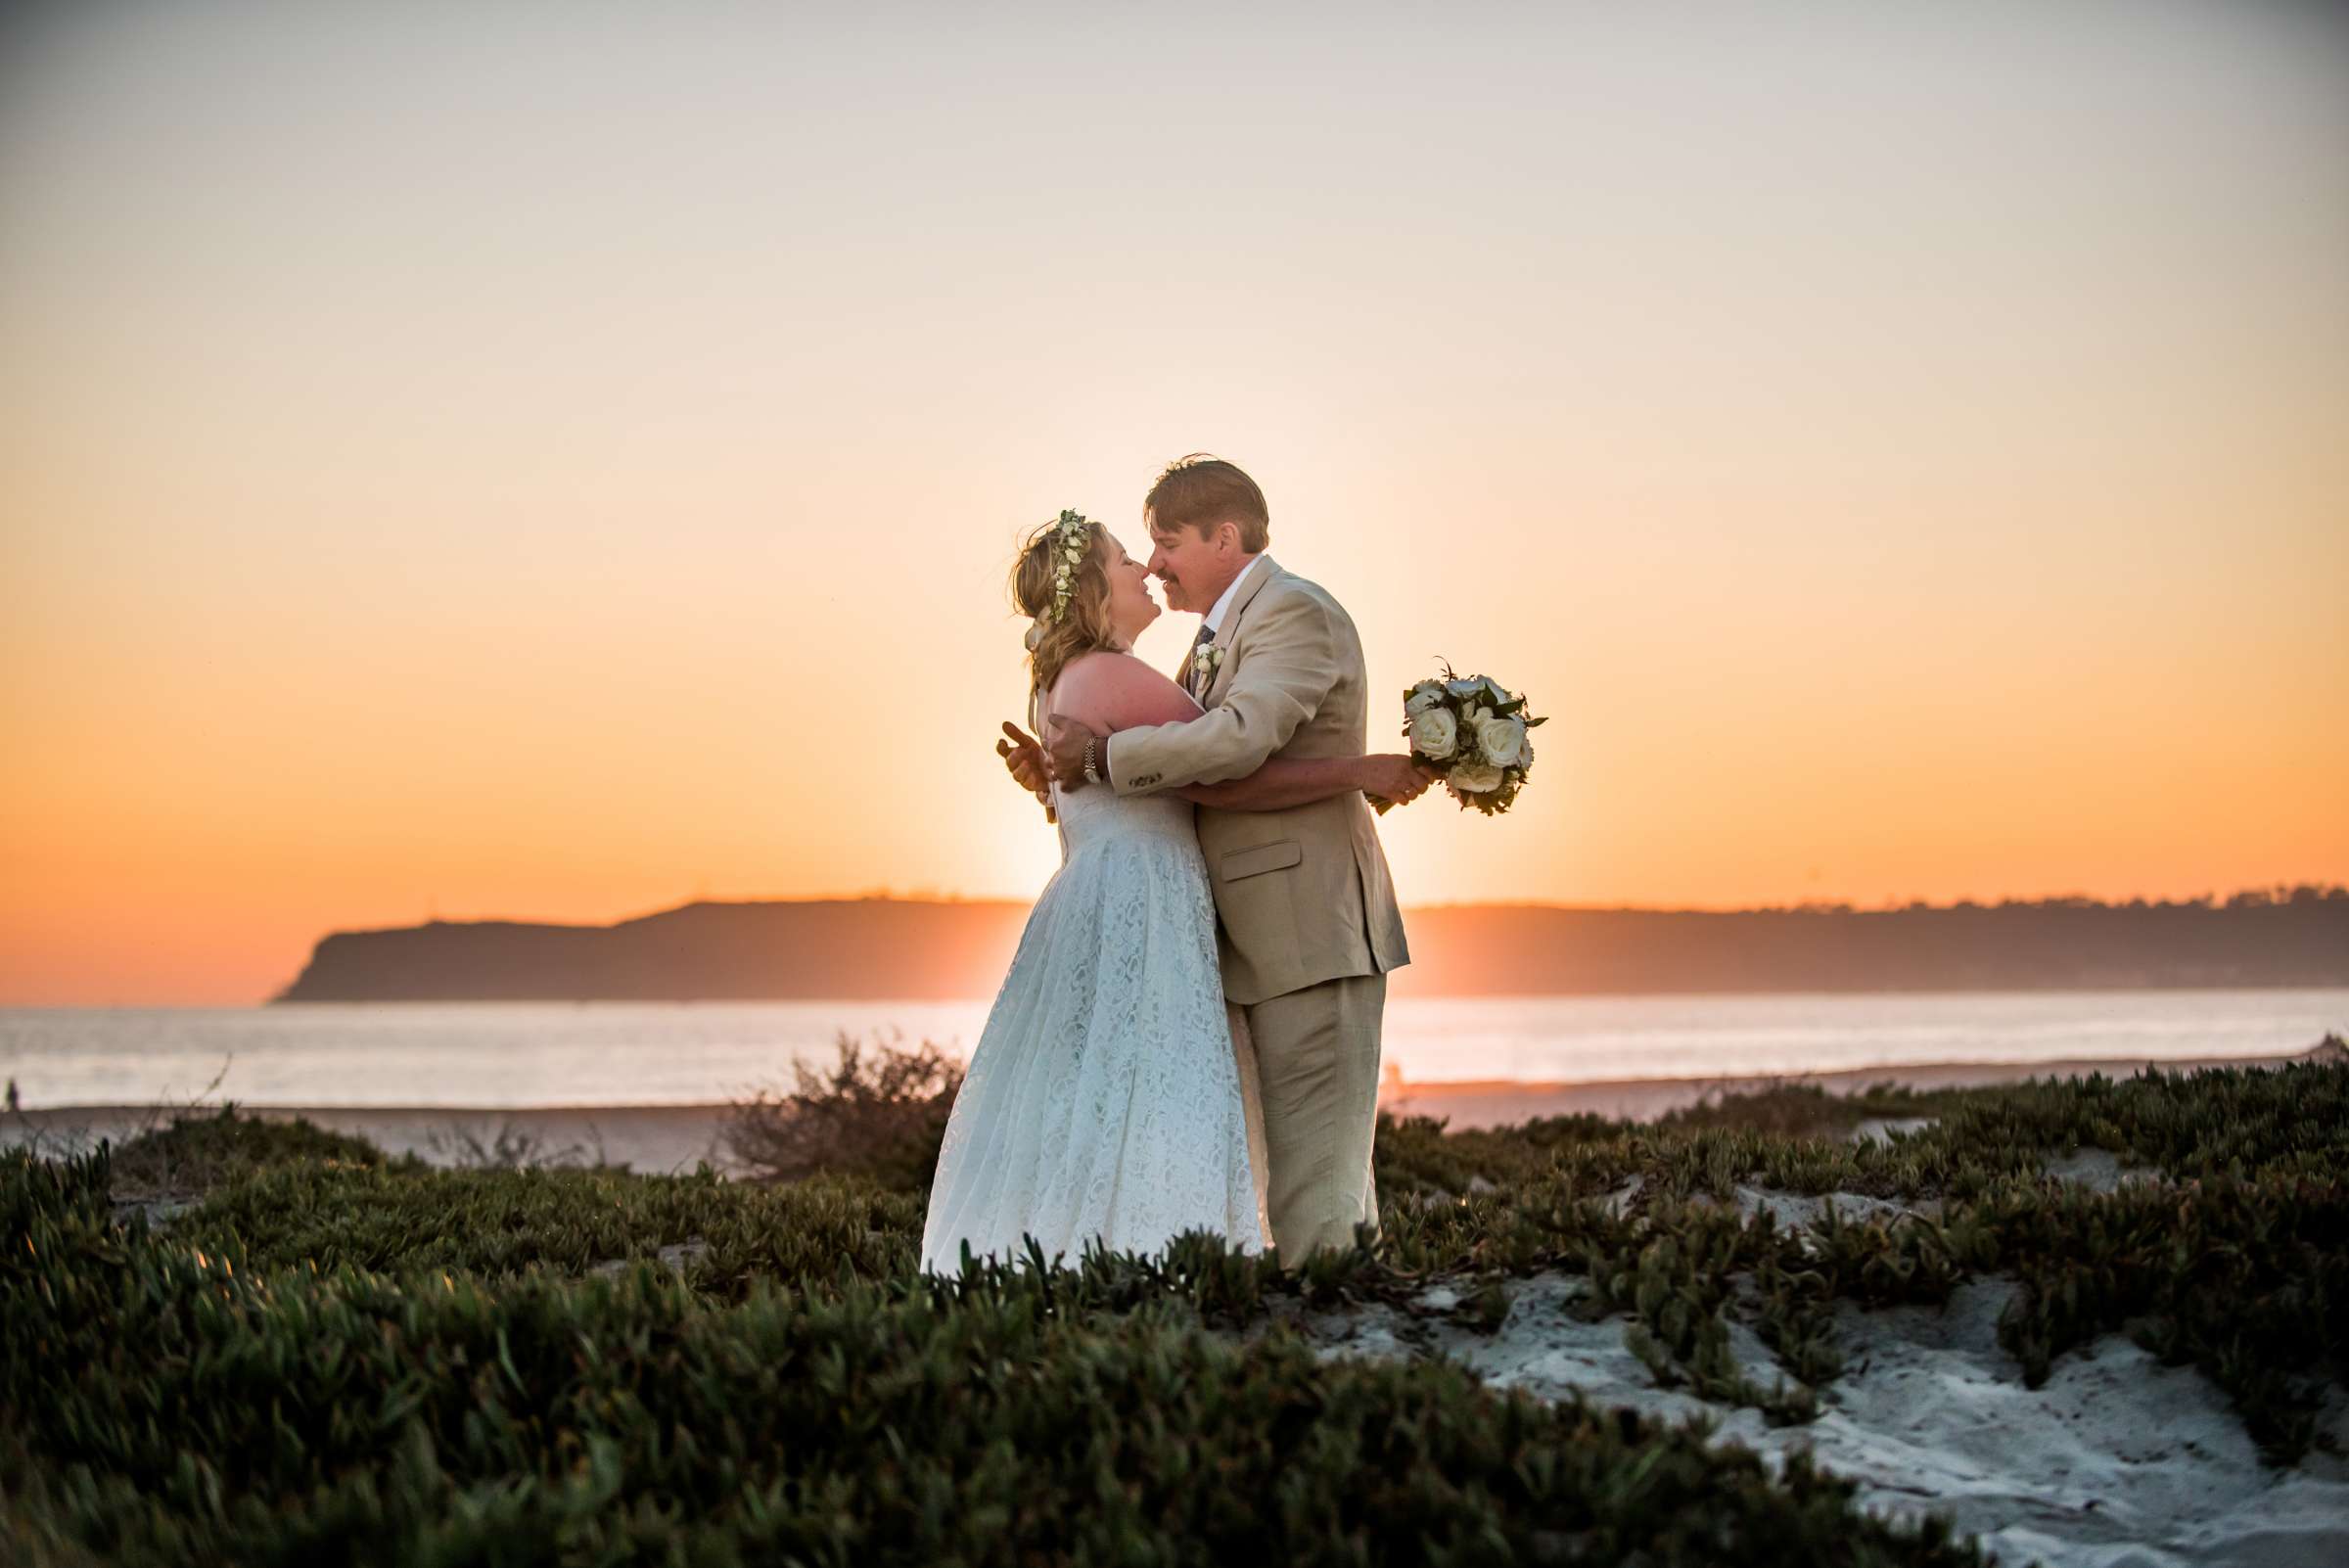 Hotel Del Coronado Wedding, Danielle and Glenn Wedding Photo #10 by True Photography